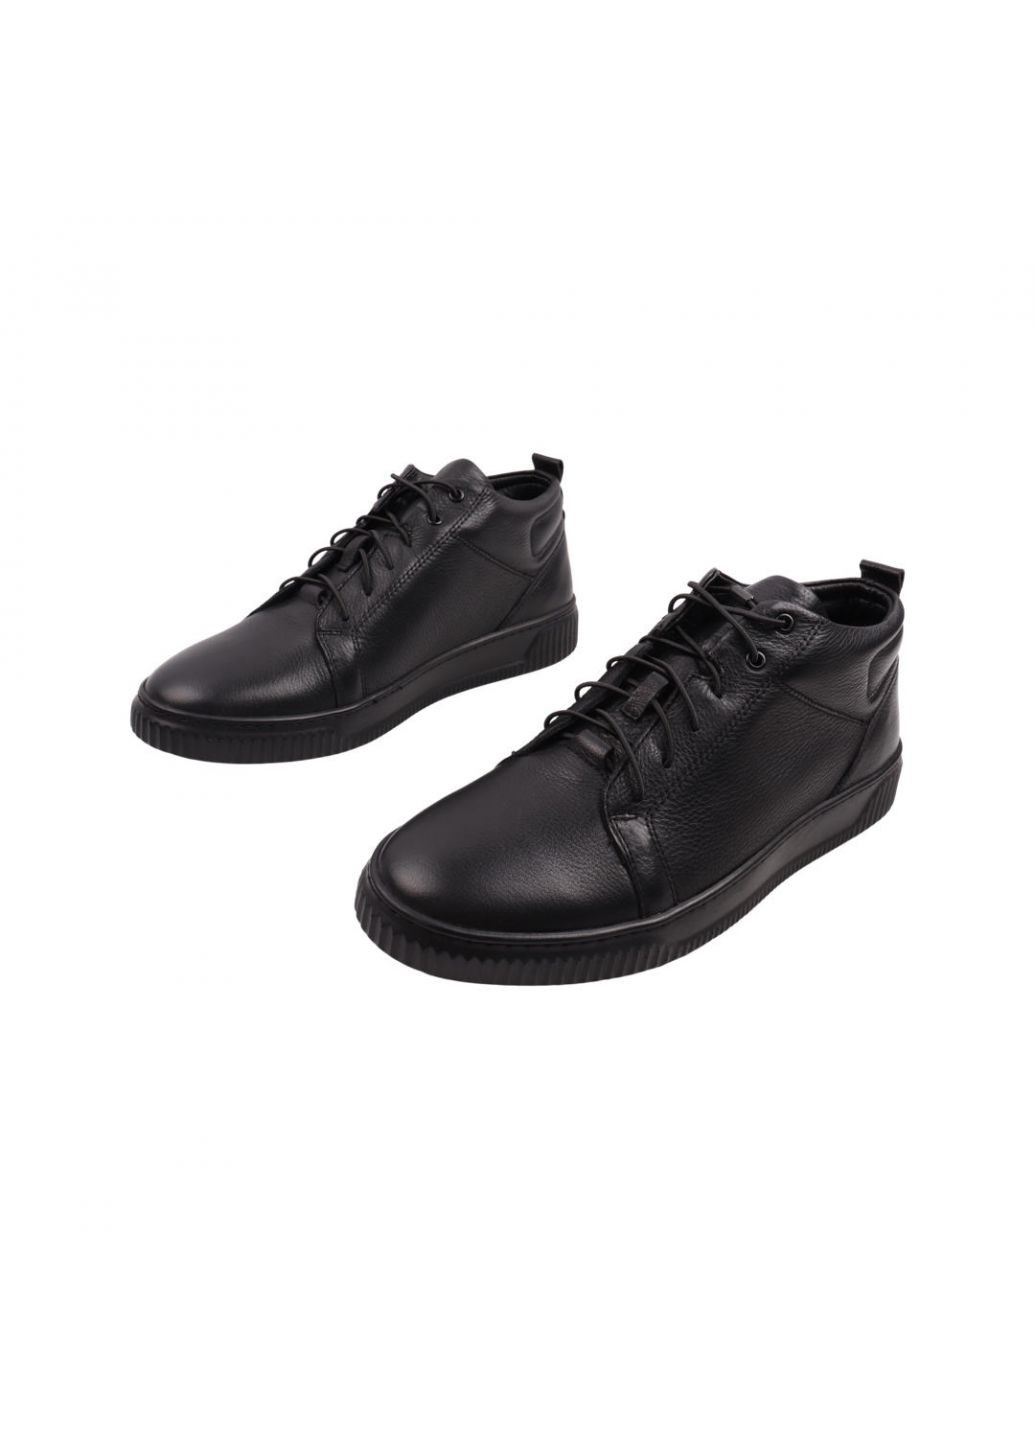 Черные ботинки мужские черные натуральная кожа Detta